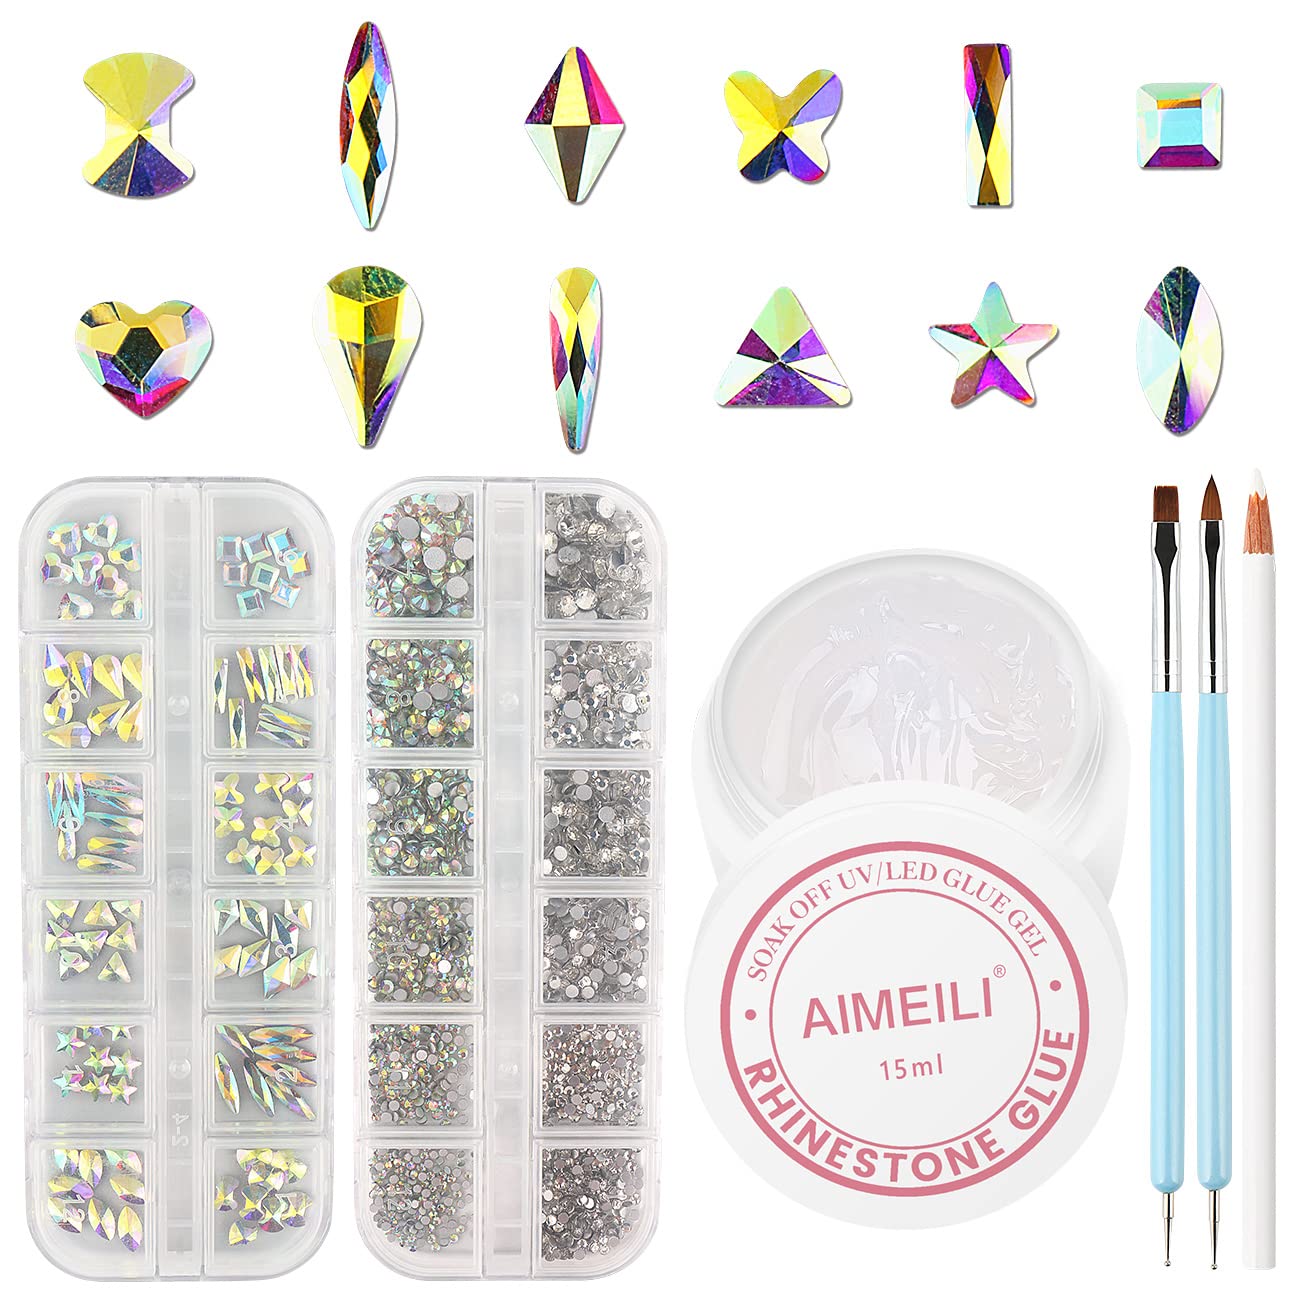 AIMEILI Nail Art Rhinestone Glue Gel Nail Kit for $8.49 + Free Shipping w/ Prime or Orders $25+